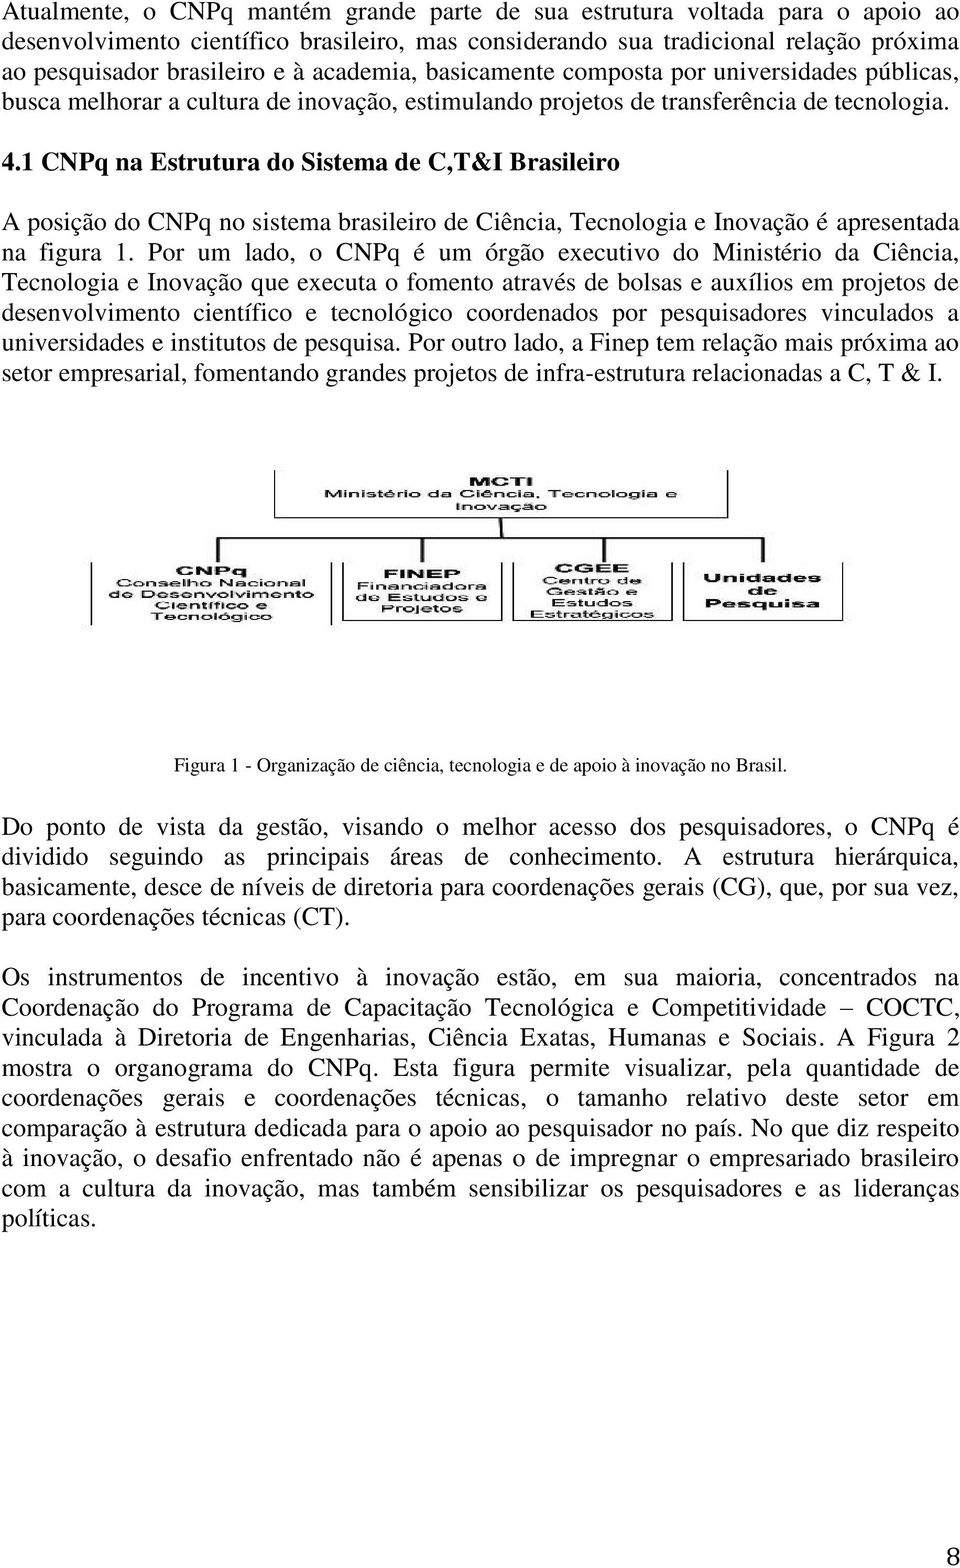 1 CNPq na Estrutura do Sistema de C,T&I Brasileiro A posição do CNPq no sistema brasileiro de Ciência, Tecnologia e Inovação é apresentada na figura 1.